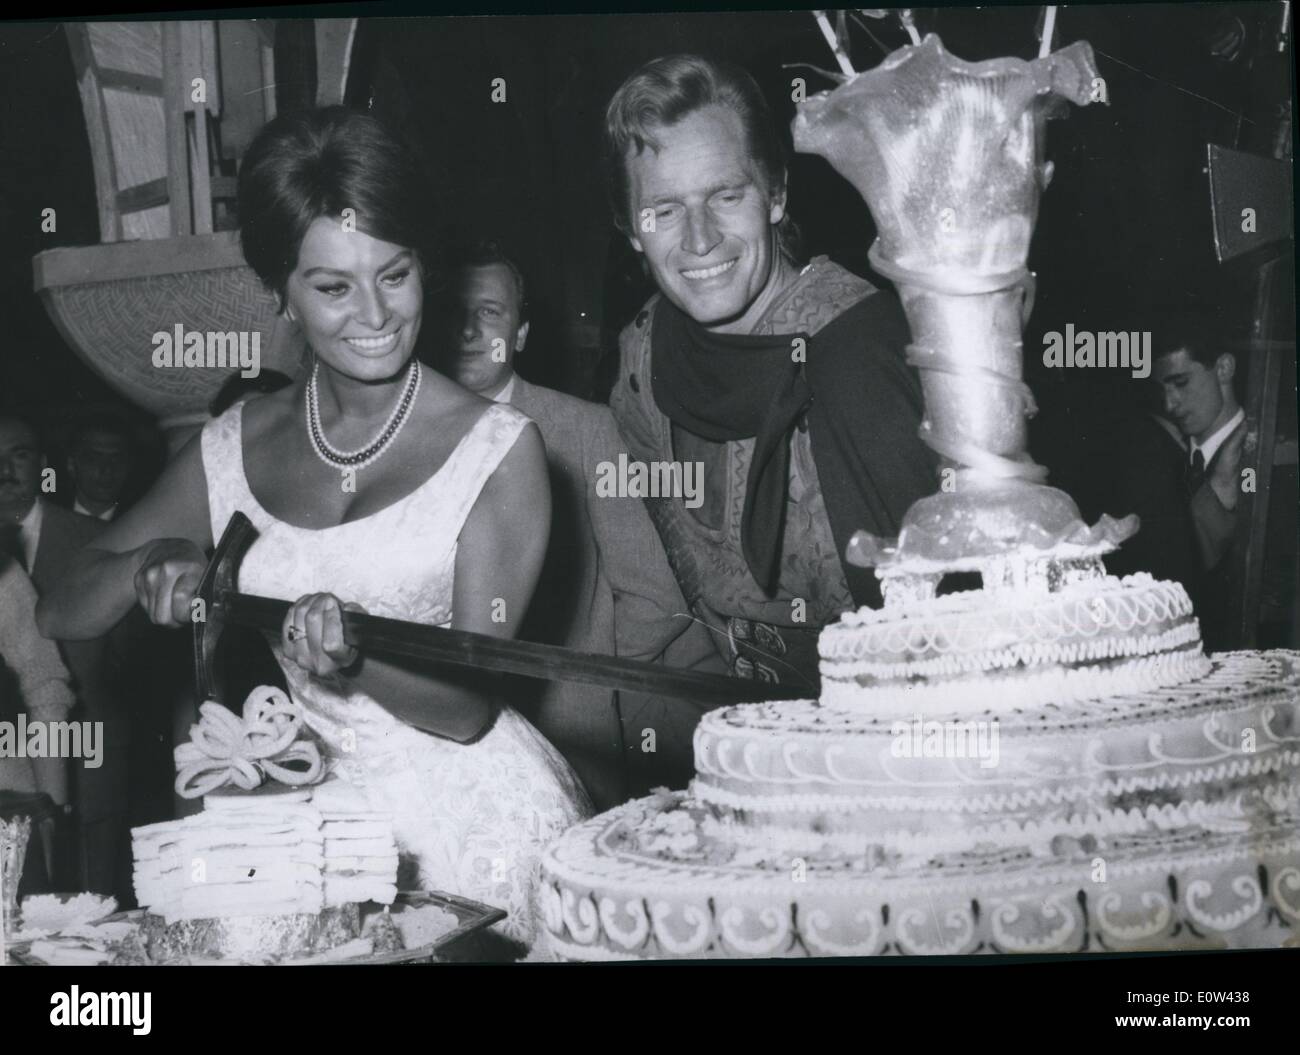 Avril 04, 1961 - pour un morceau de gâteau ont été Sophia Loren et American Movie-Star Chariton Heston lors d'une fête Donné à Rome film ''Le Cid'' ; Sophia Loren utilisé une épée pour couper le banquet-gâteau. Banque D'Images